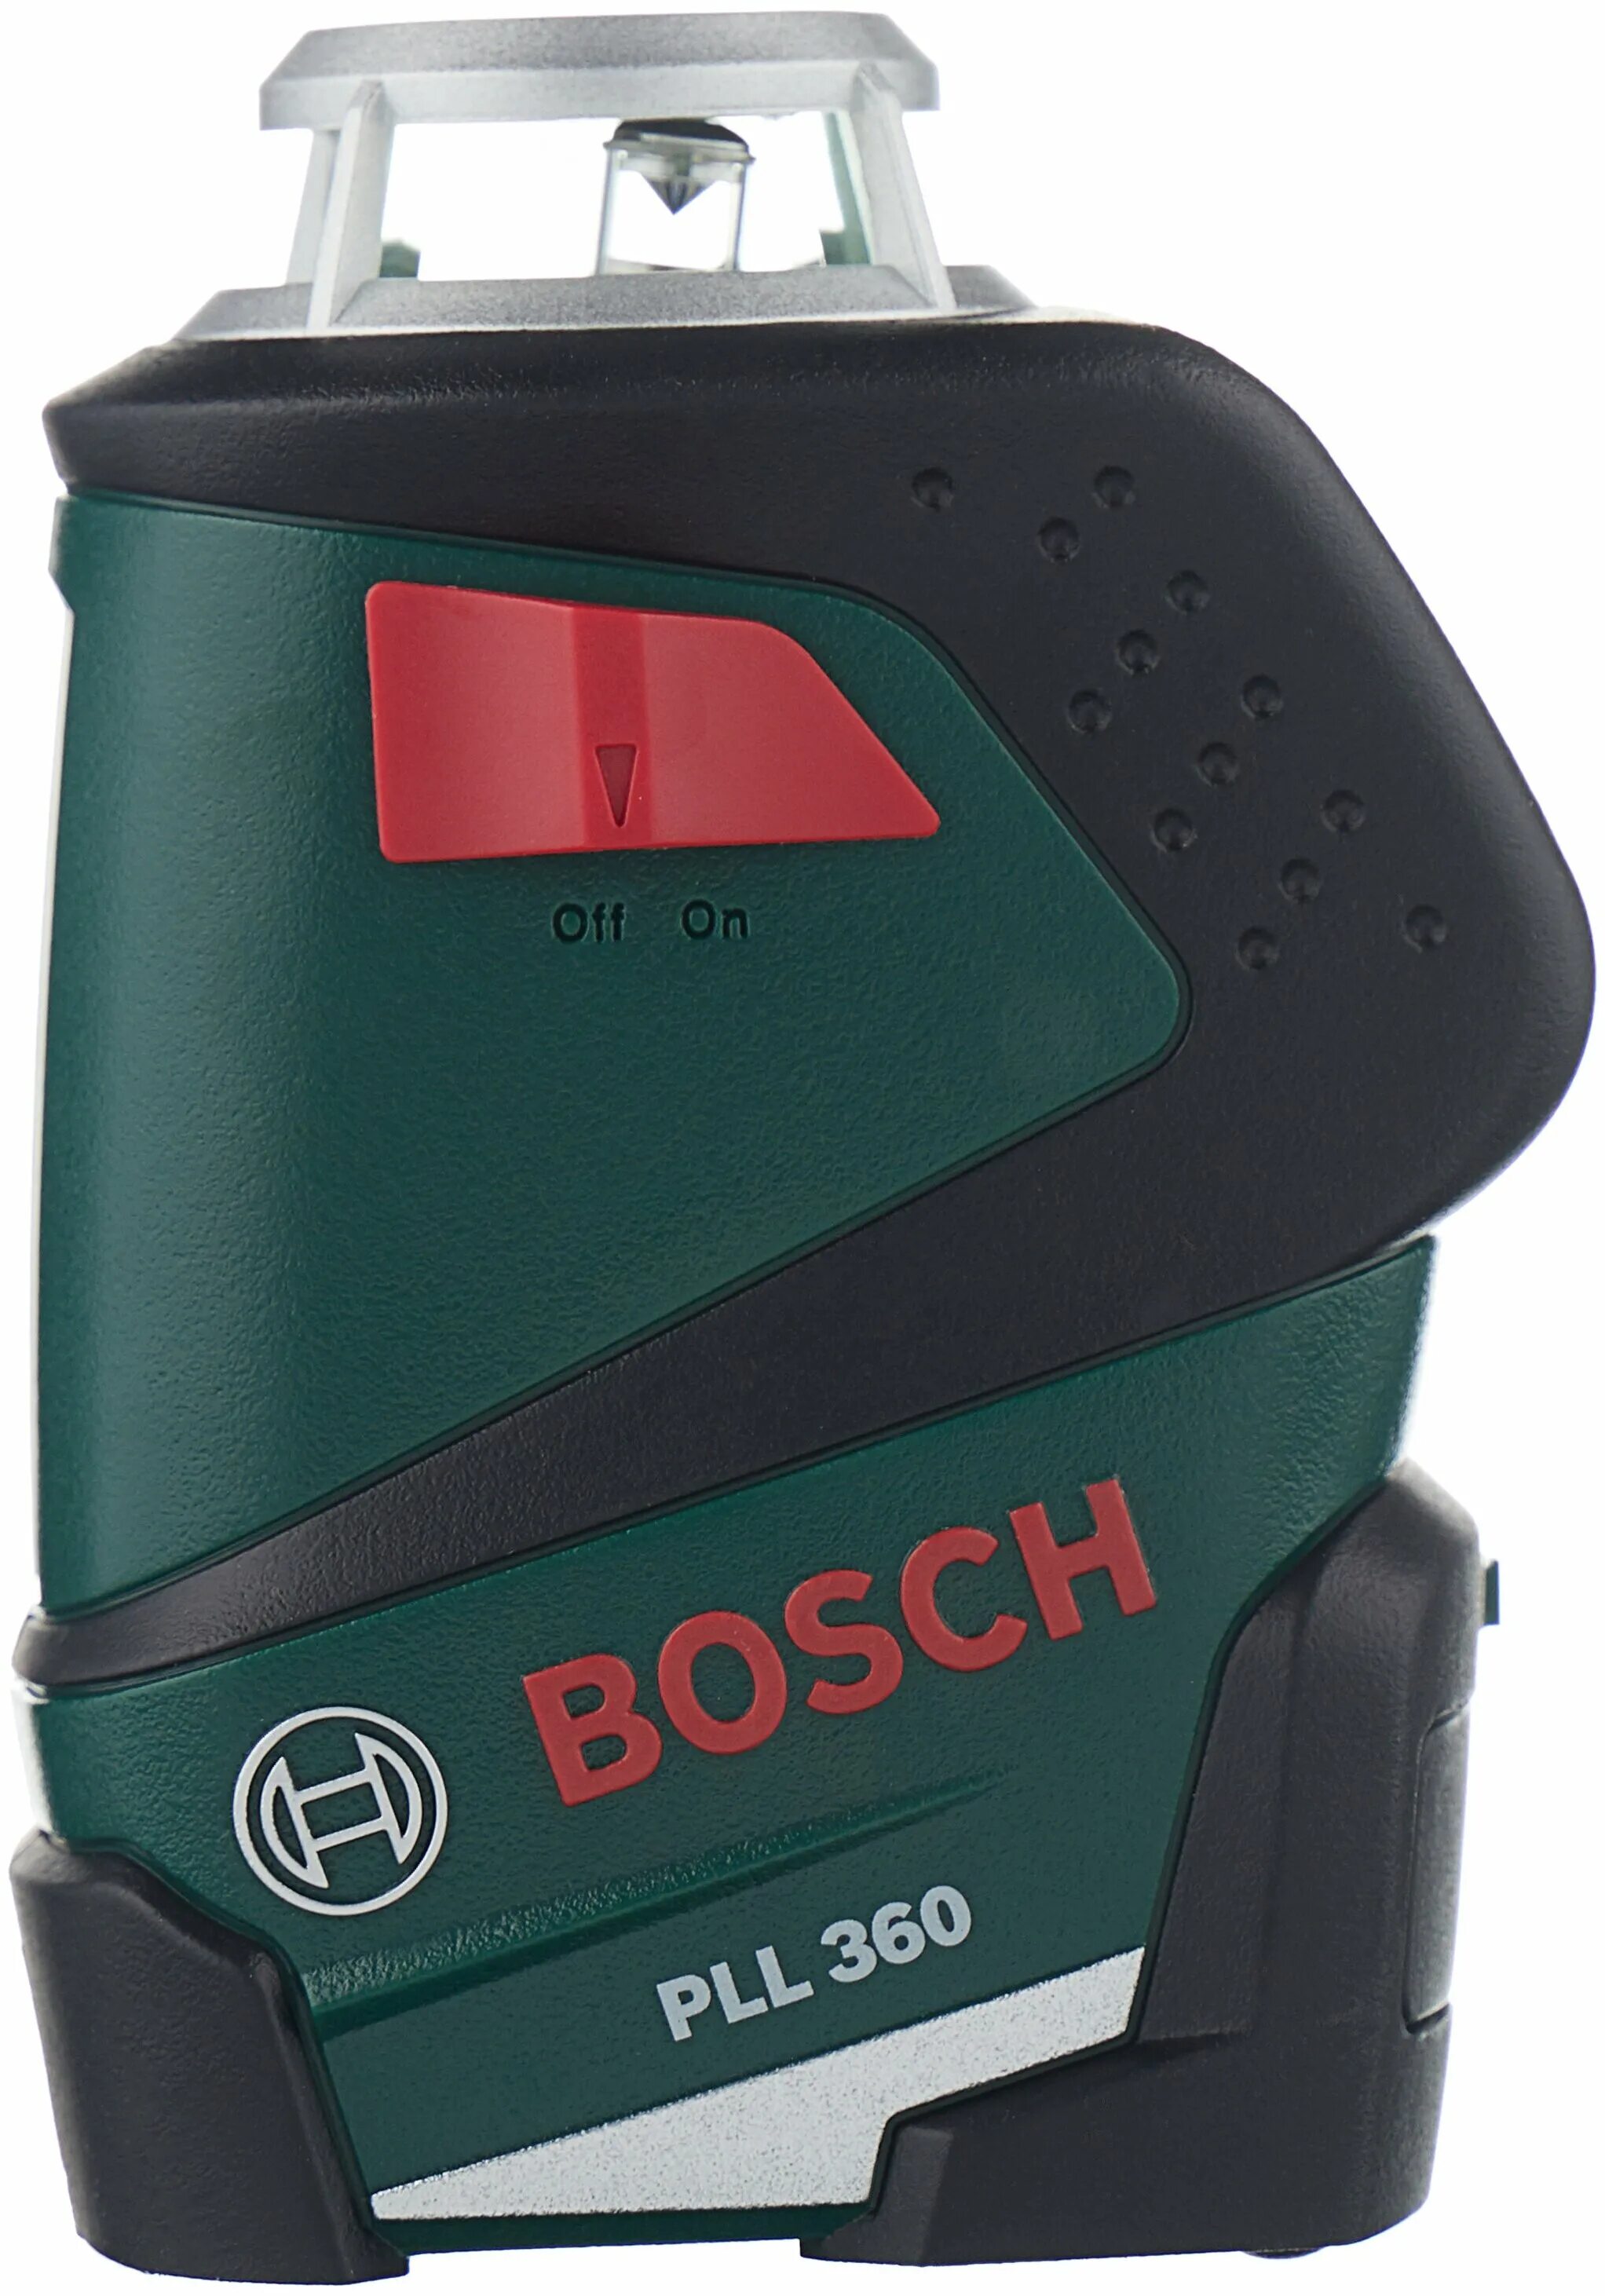 Уровень бош PLL 360. Bosch PLL 360 Set. Лазерный нивелир бош 360. Нивелир лазерный PLL 360 Set Bosch.